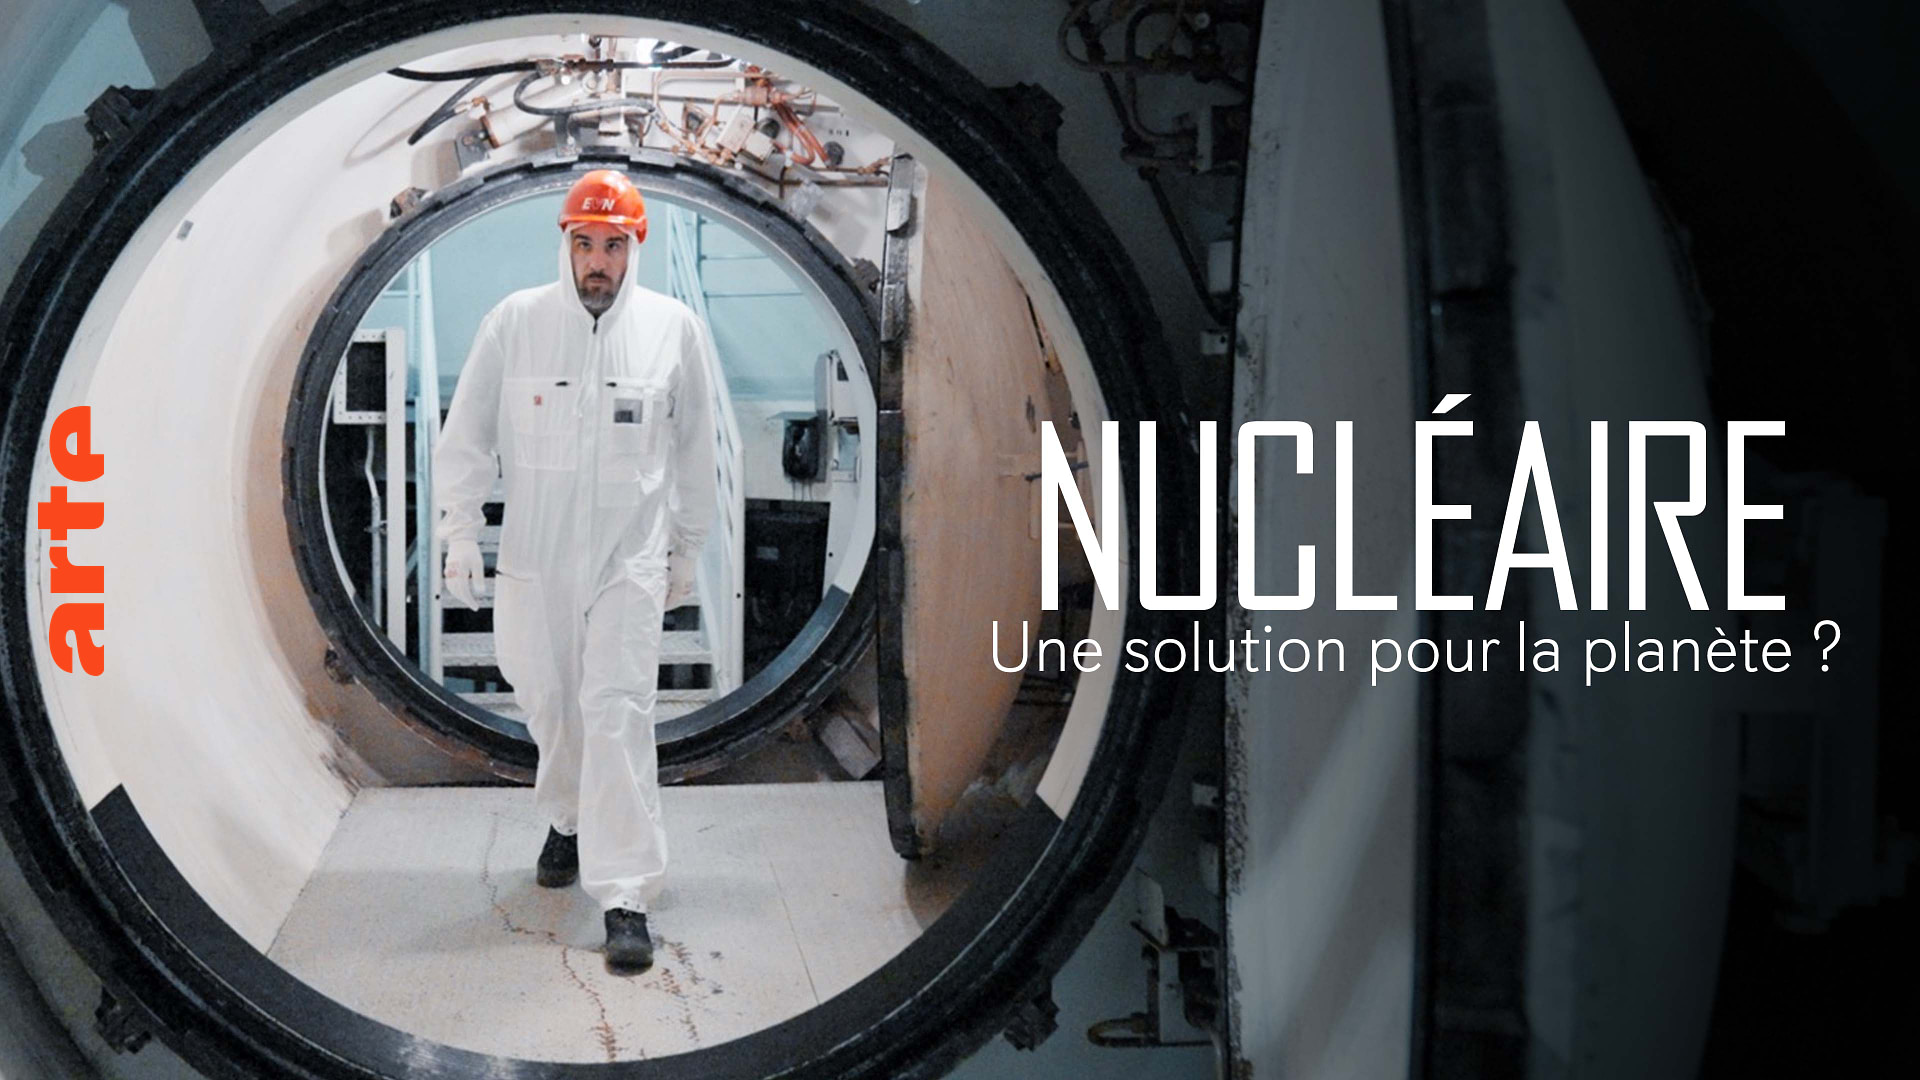 Nucléaire : une solution pour la planète ? - Regarder le documentaire complet | ARTE